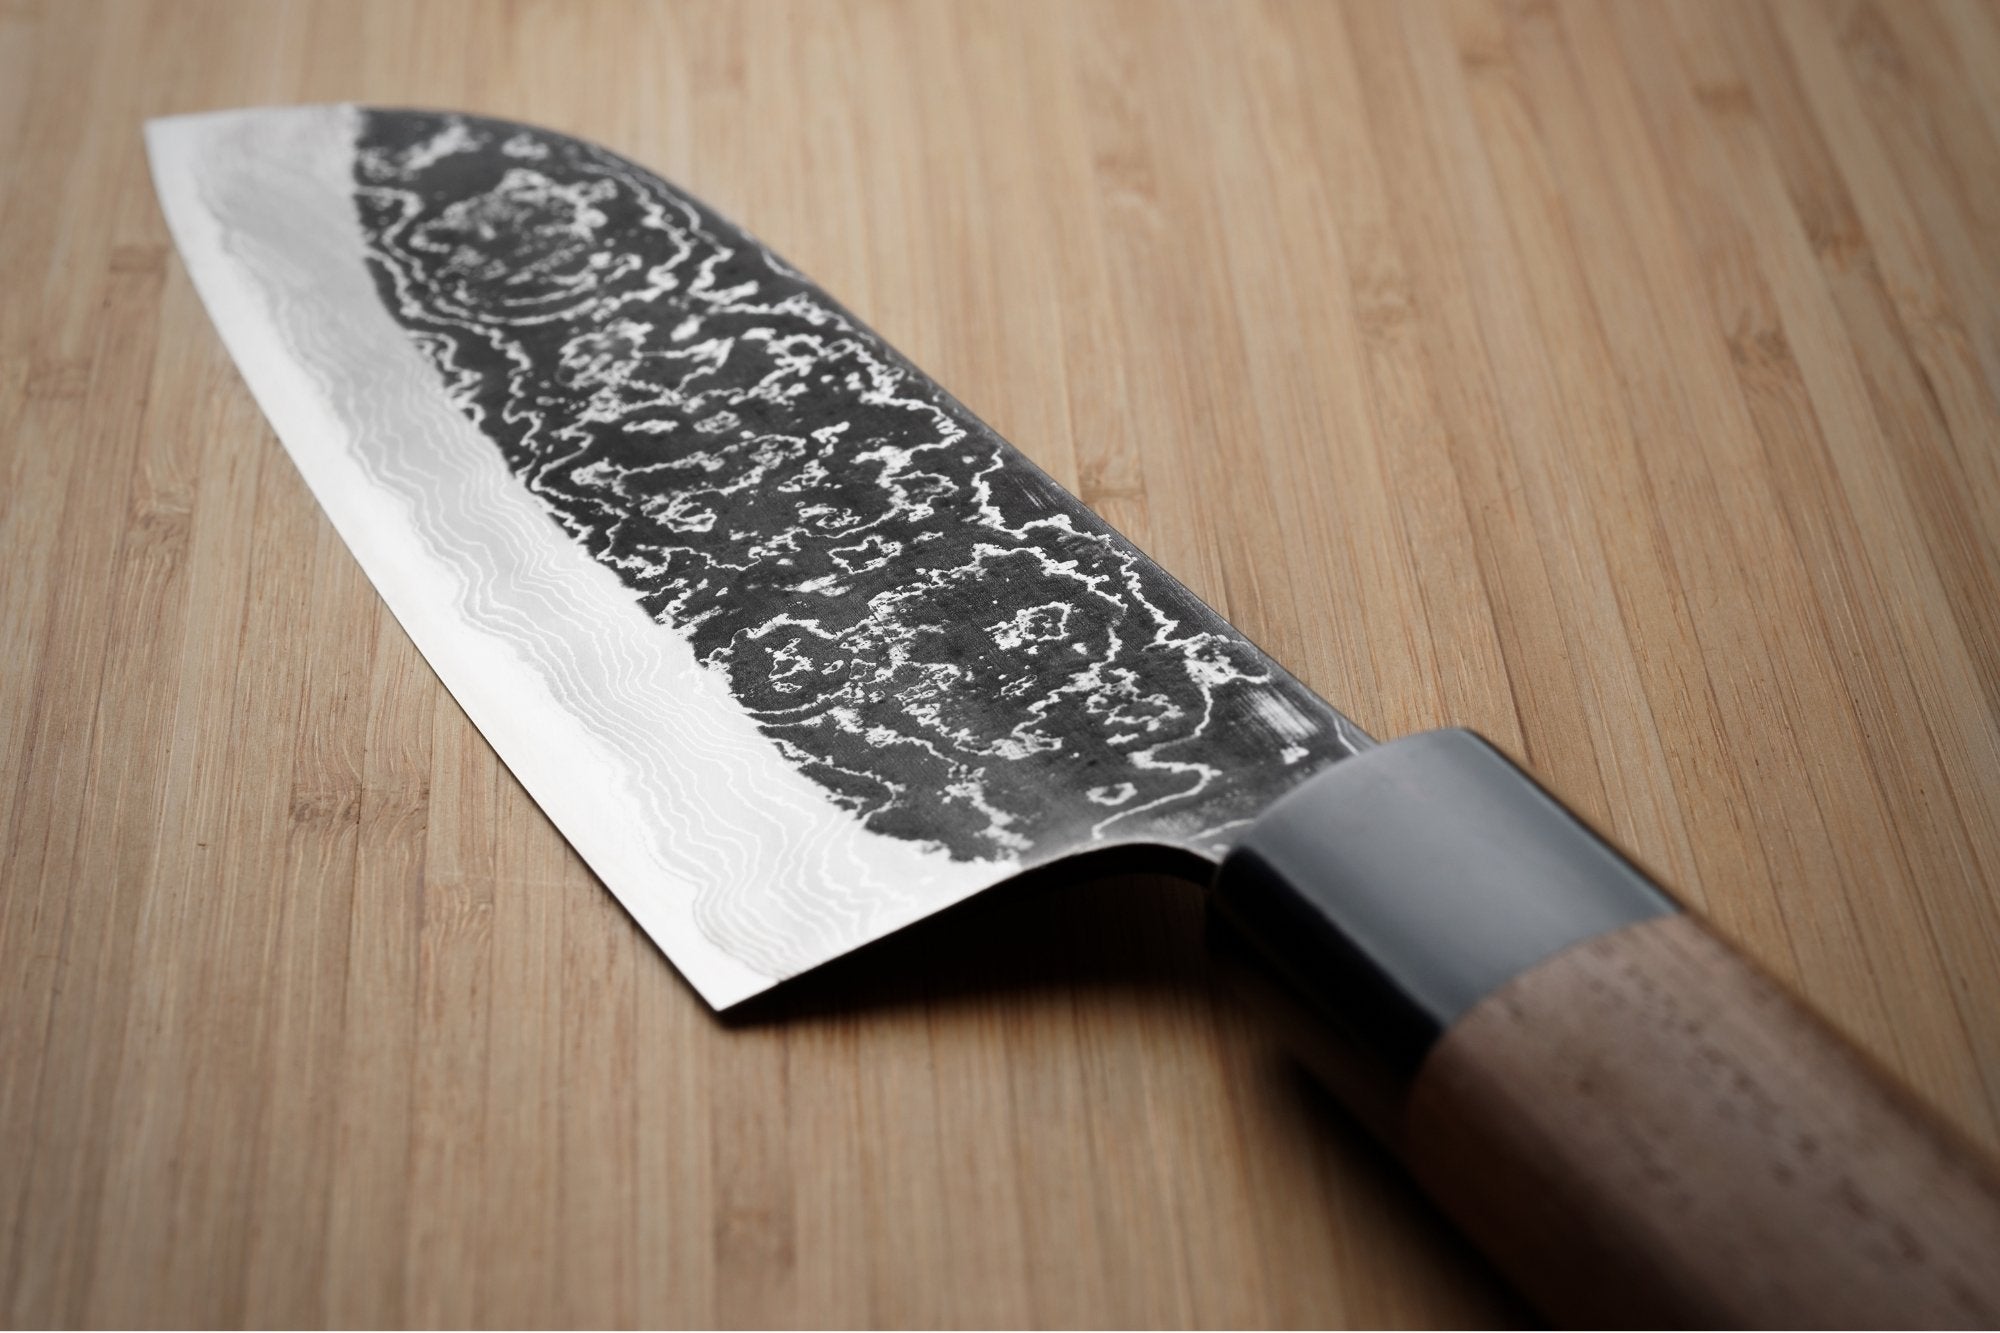 9.47 Steak Knife in Gabon Ebony